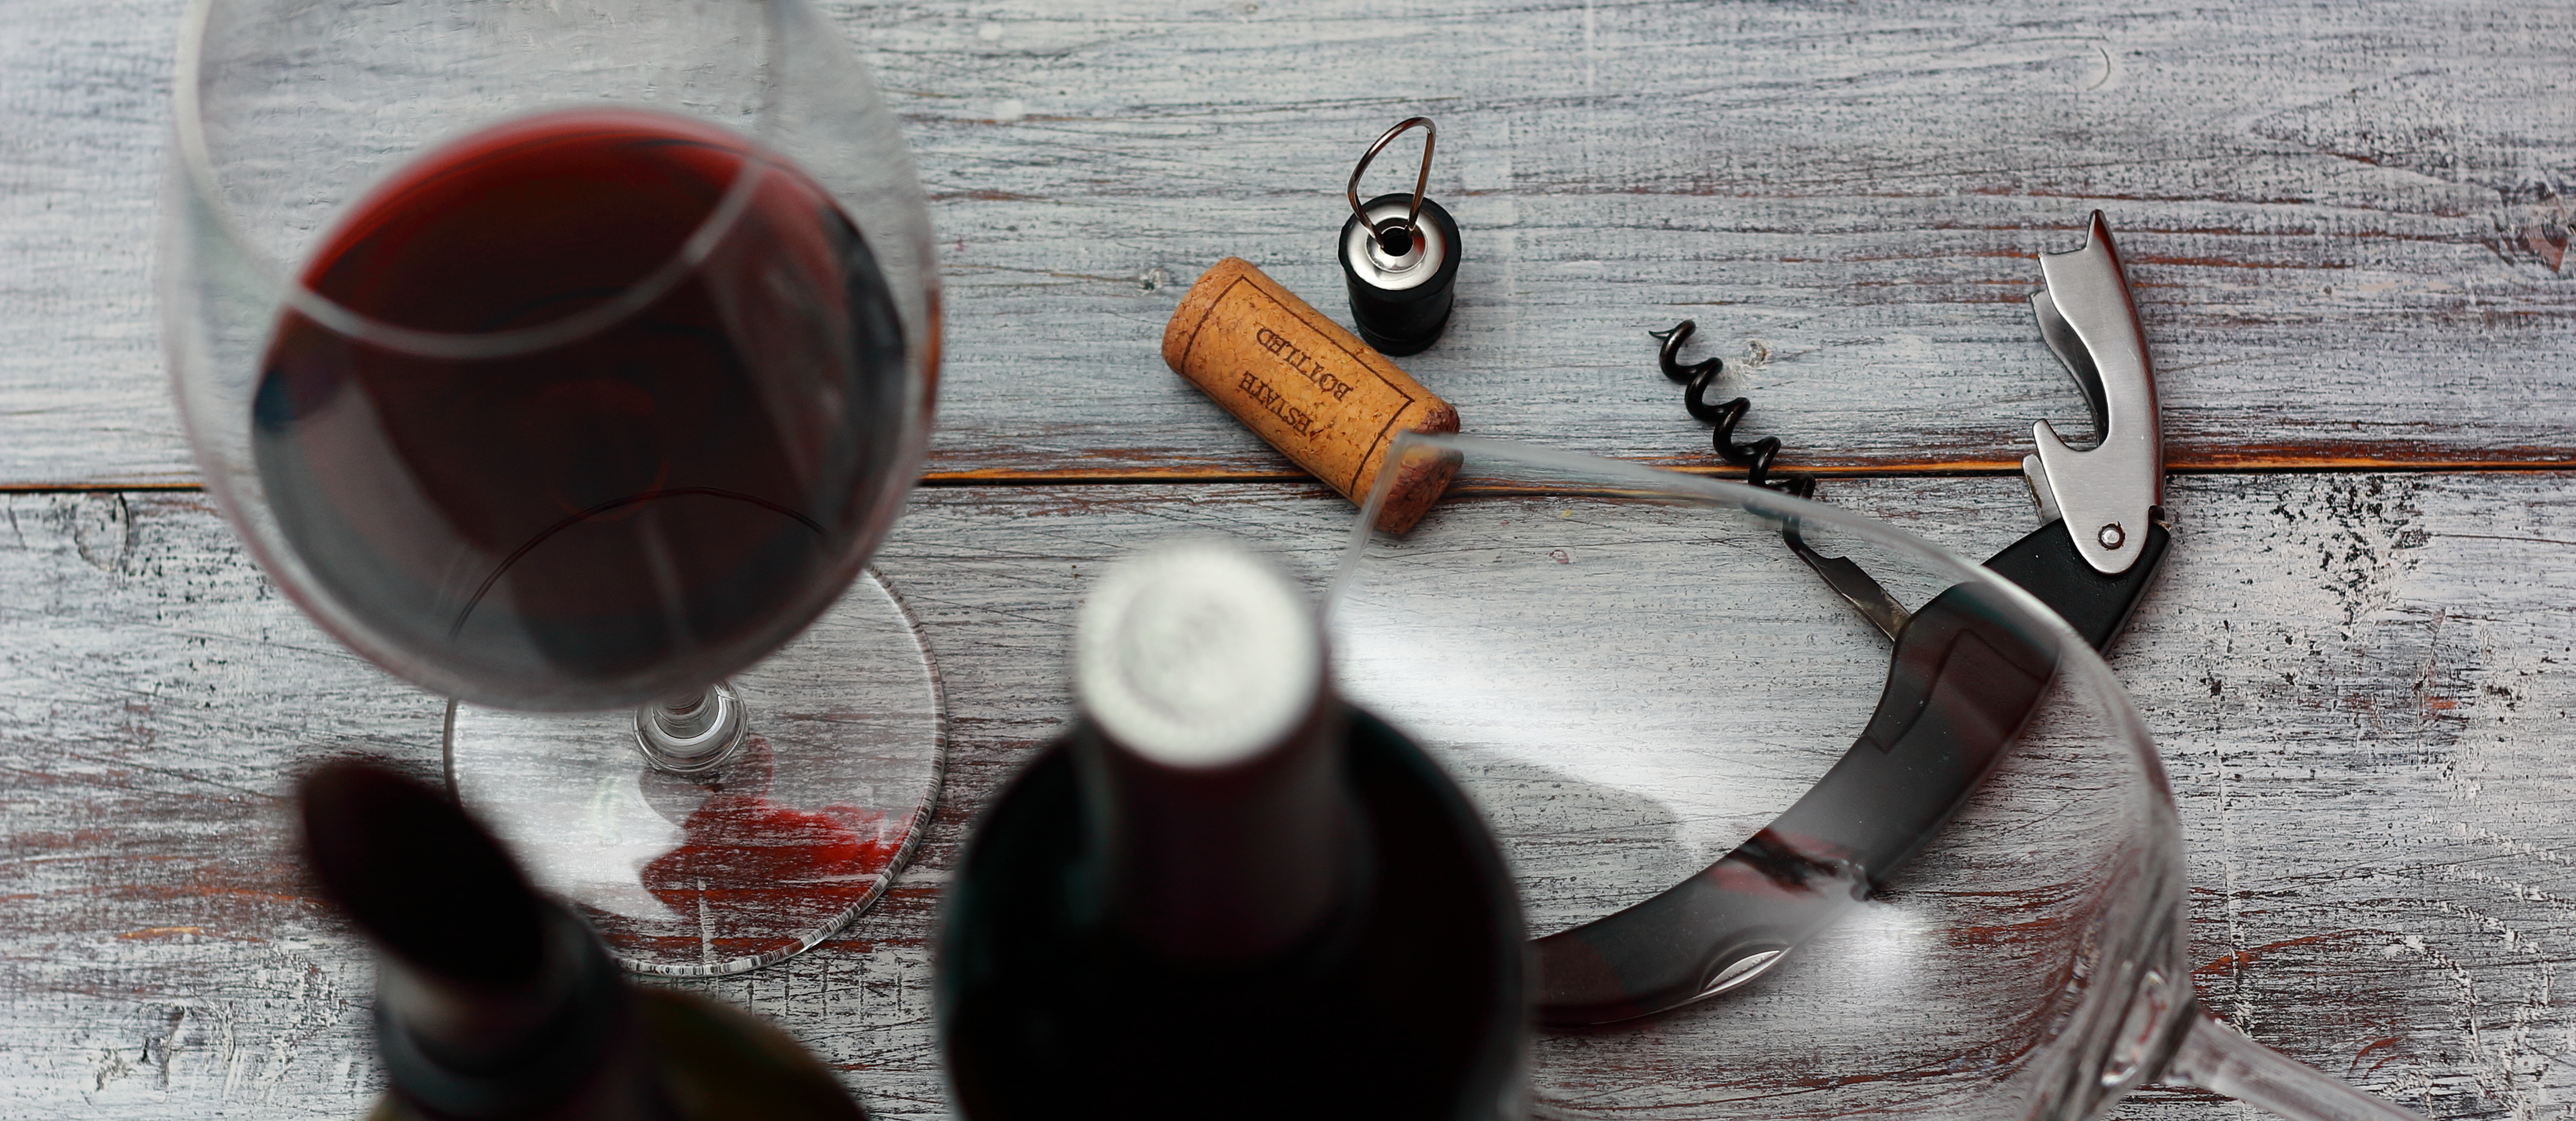 12 utensilios del vino para disfrutarlo como un profesional